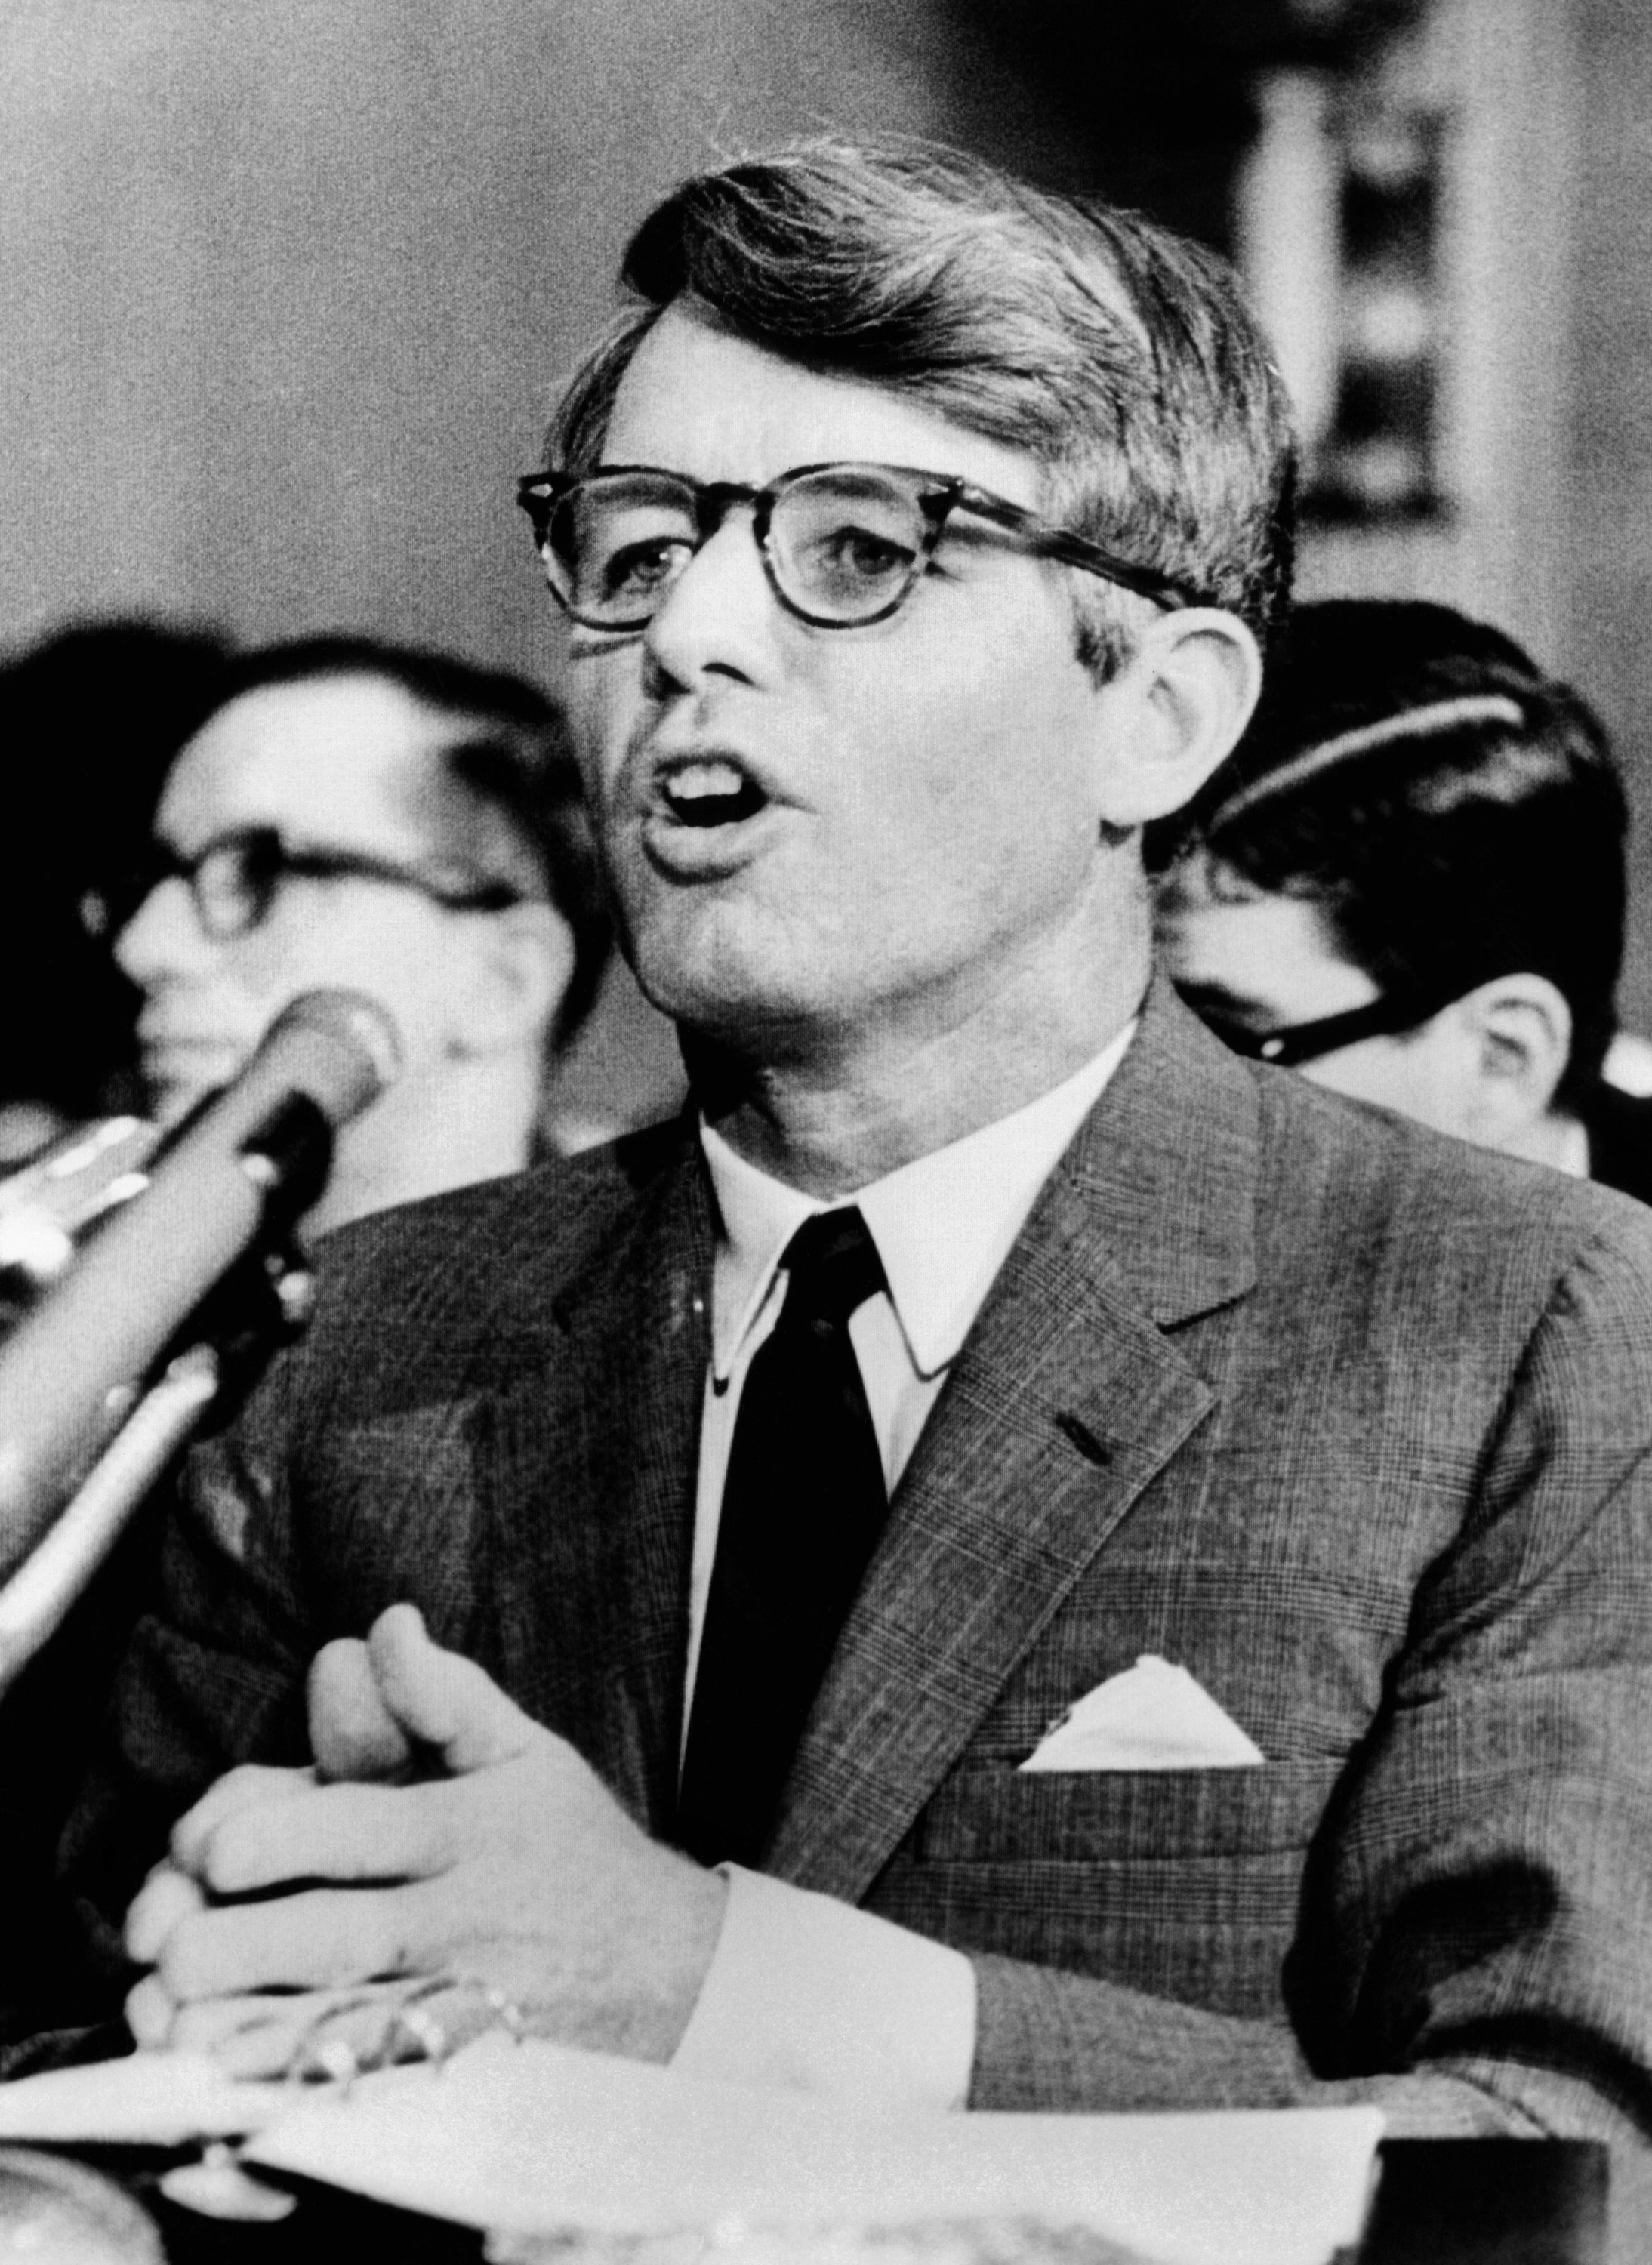 Robert Kennedy, fratello del defunto John, in corsa alle primarie del 1968 del partito democratico.